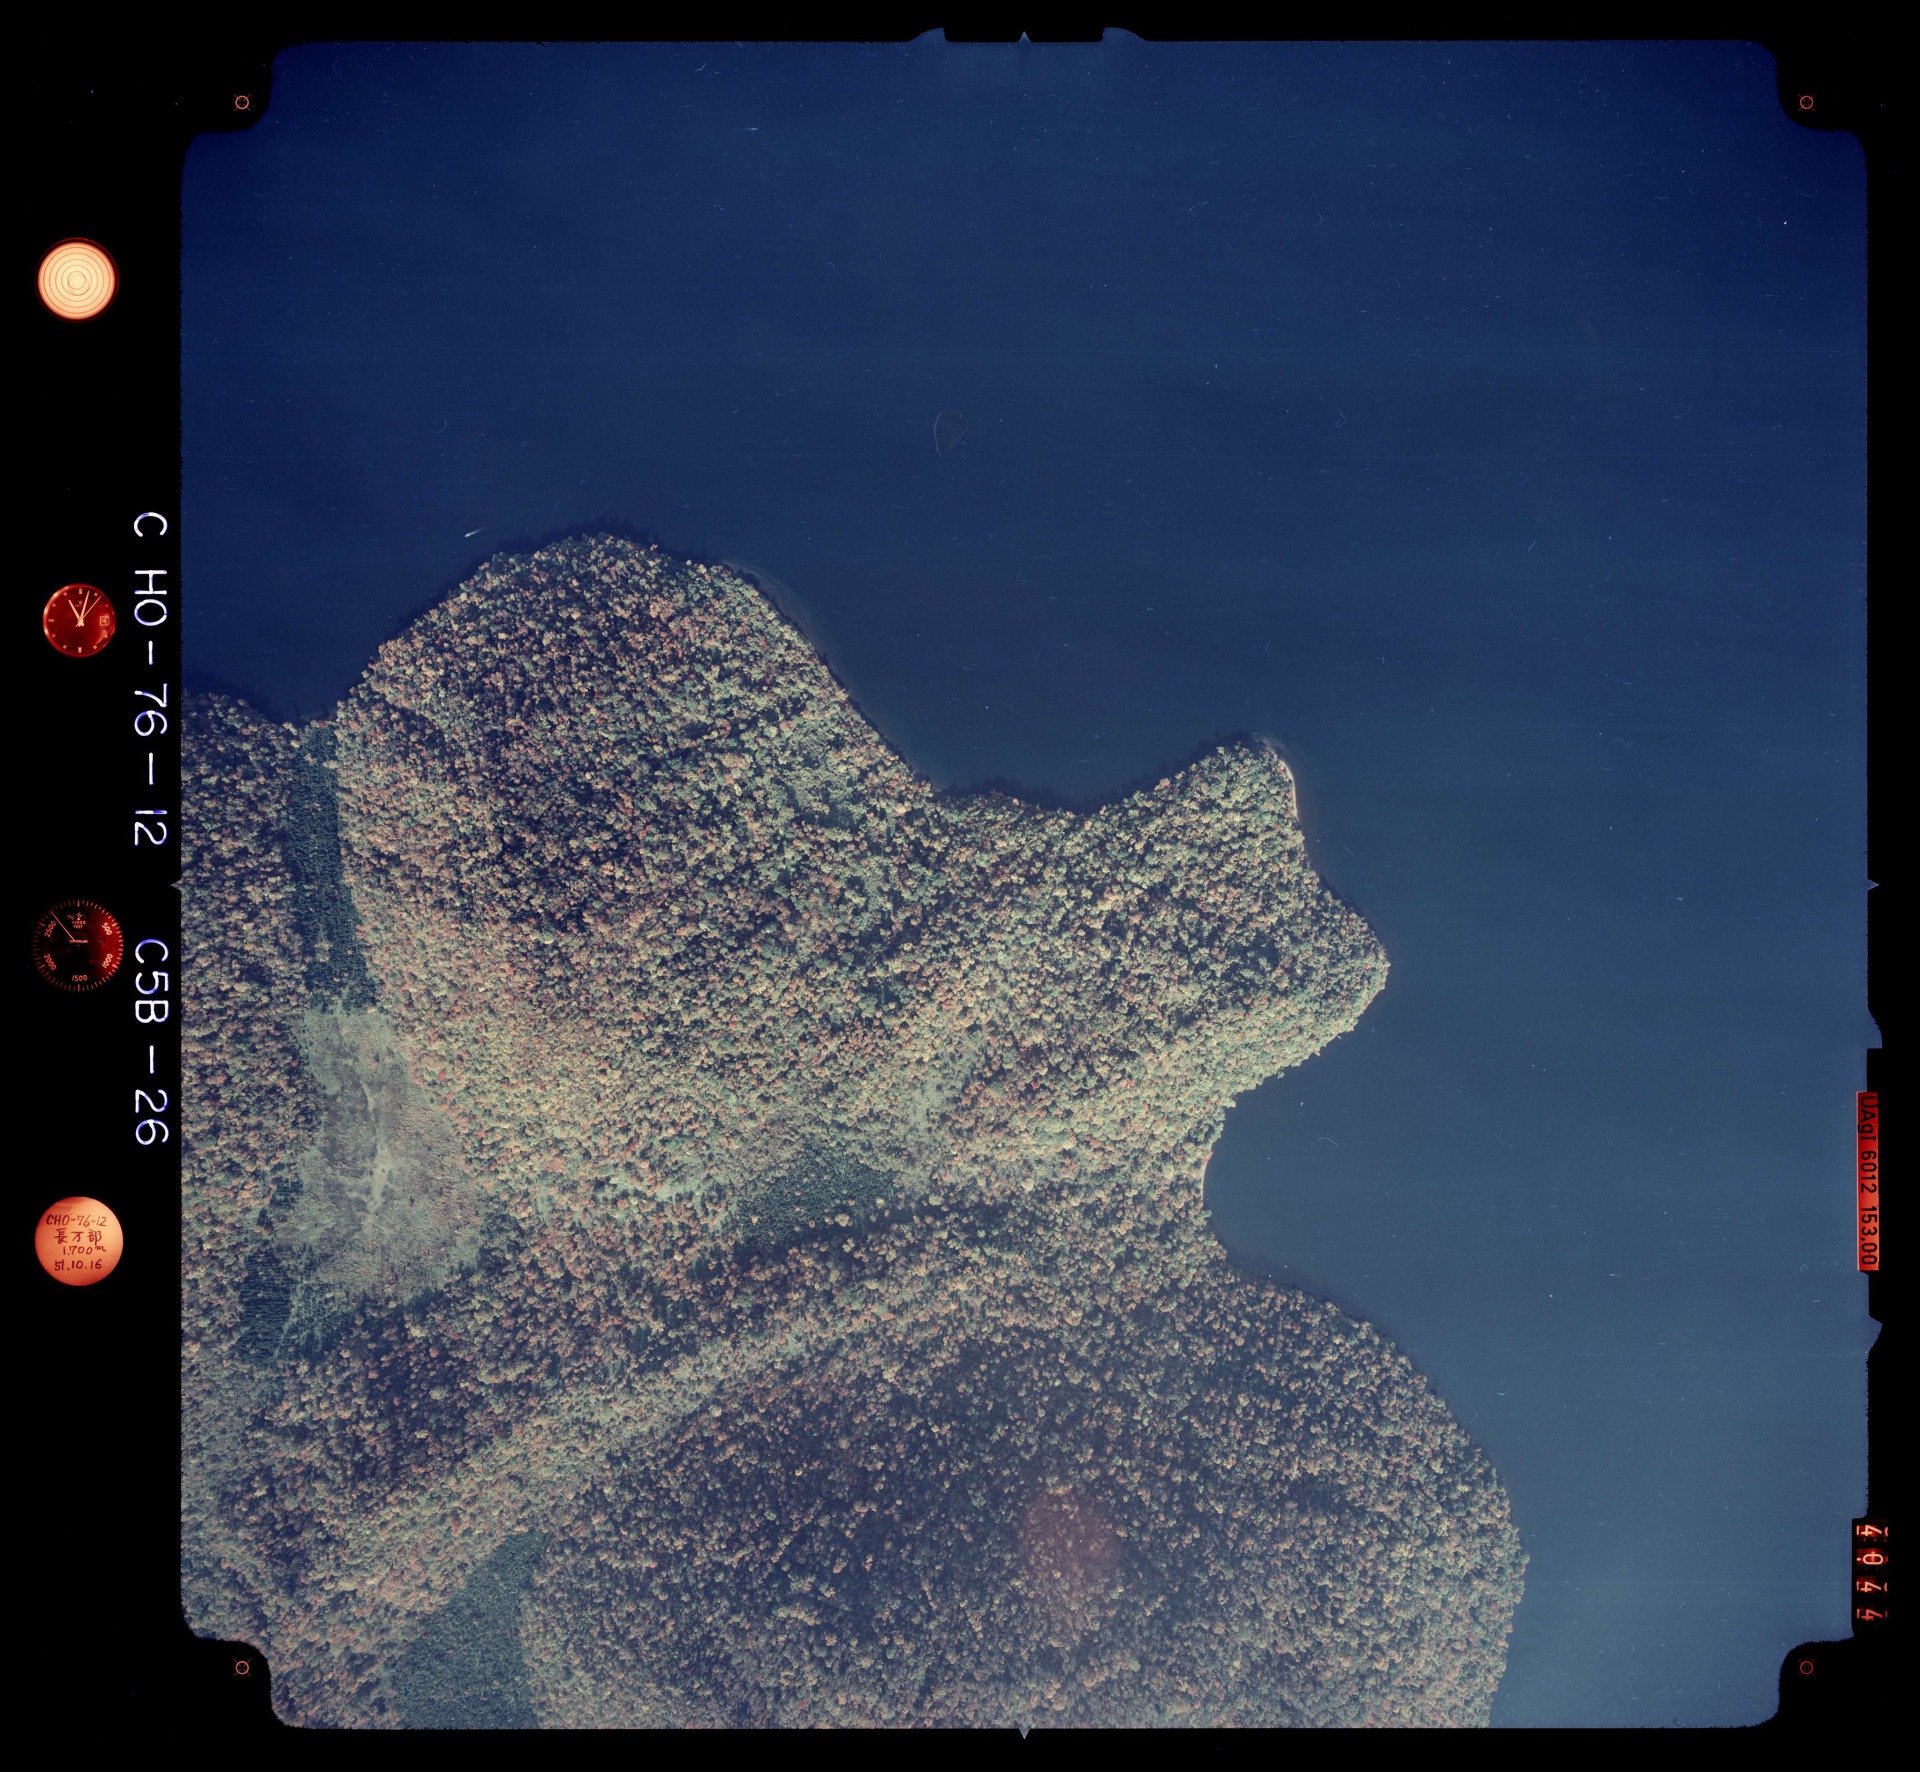 国土地理院 洞爺湖（北海道虻田郡洞爺湖町<br>
有珠郡壮瞥町） 空撮写真 1976年10月16日